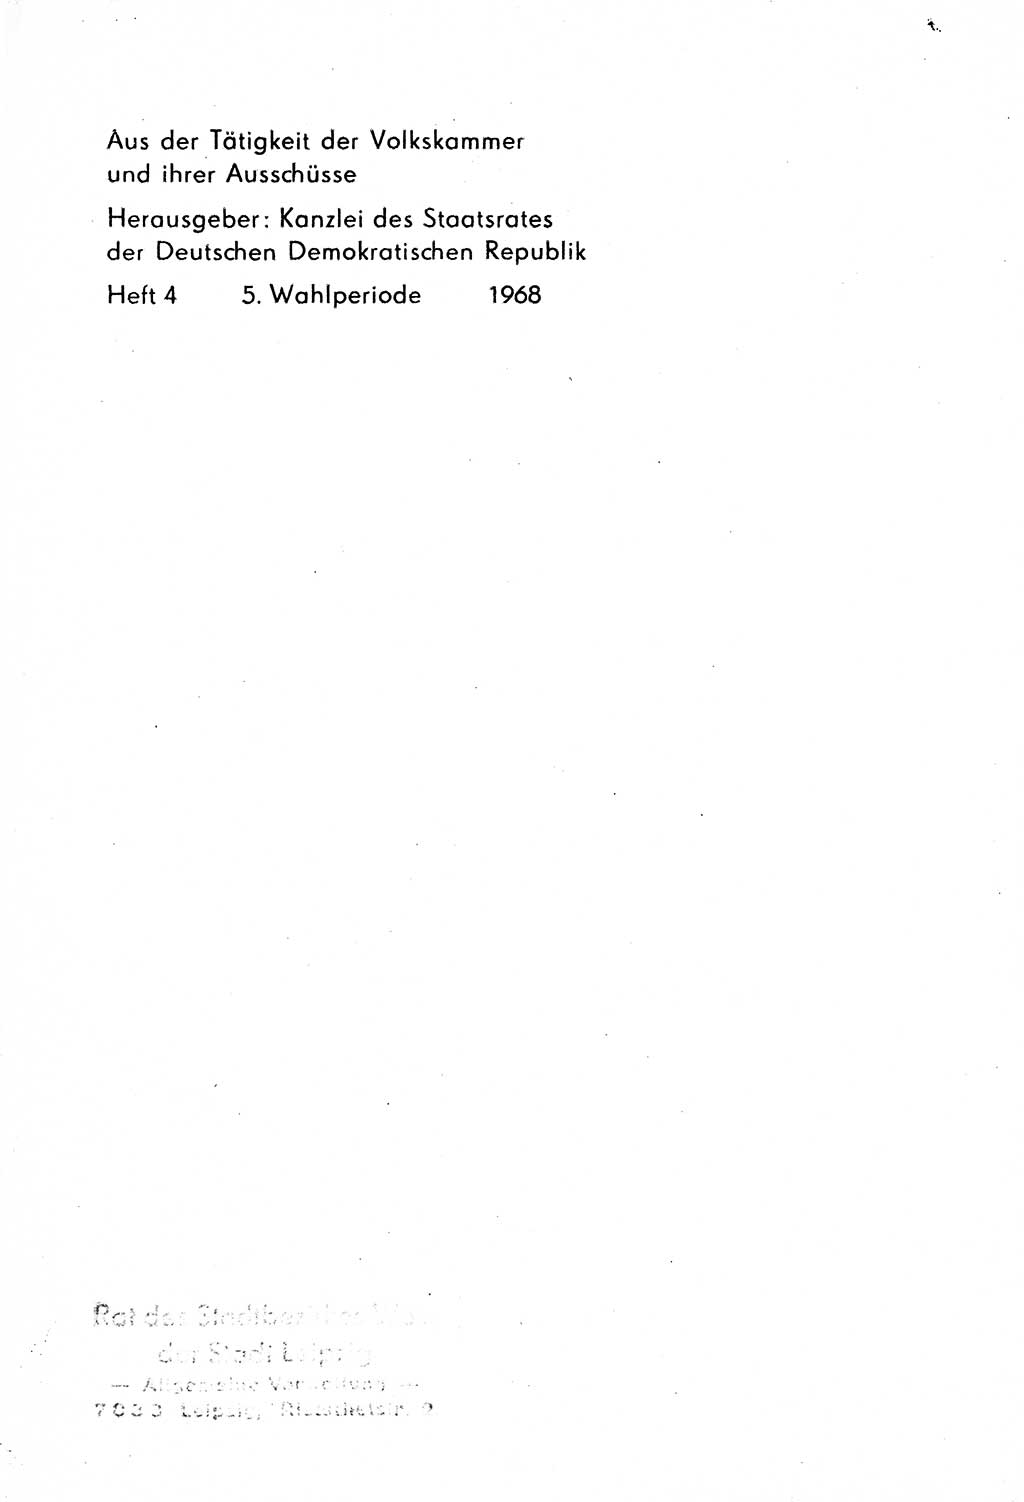 Strafrecht [Deutsche Demokratische Republik (DDR)] 1968, Seite 1 (Strafr. DDR 1968, S. 1)